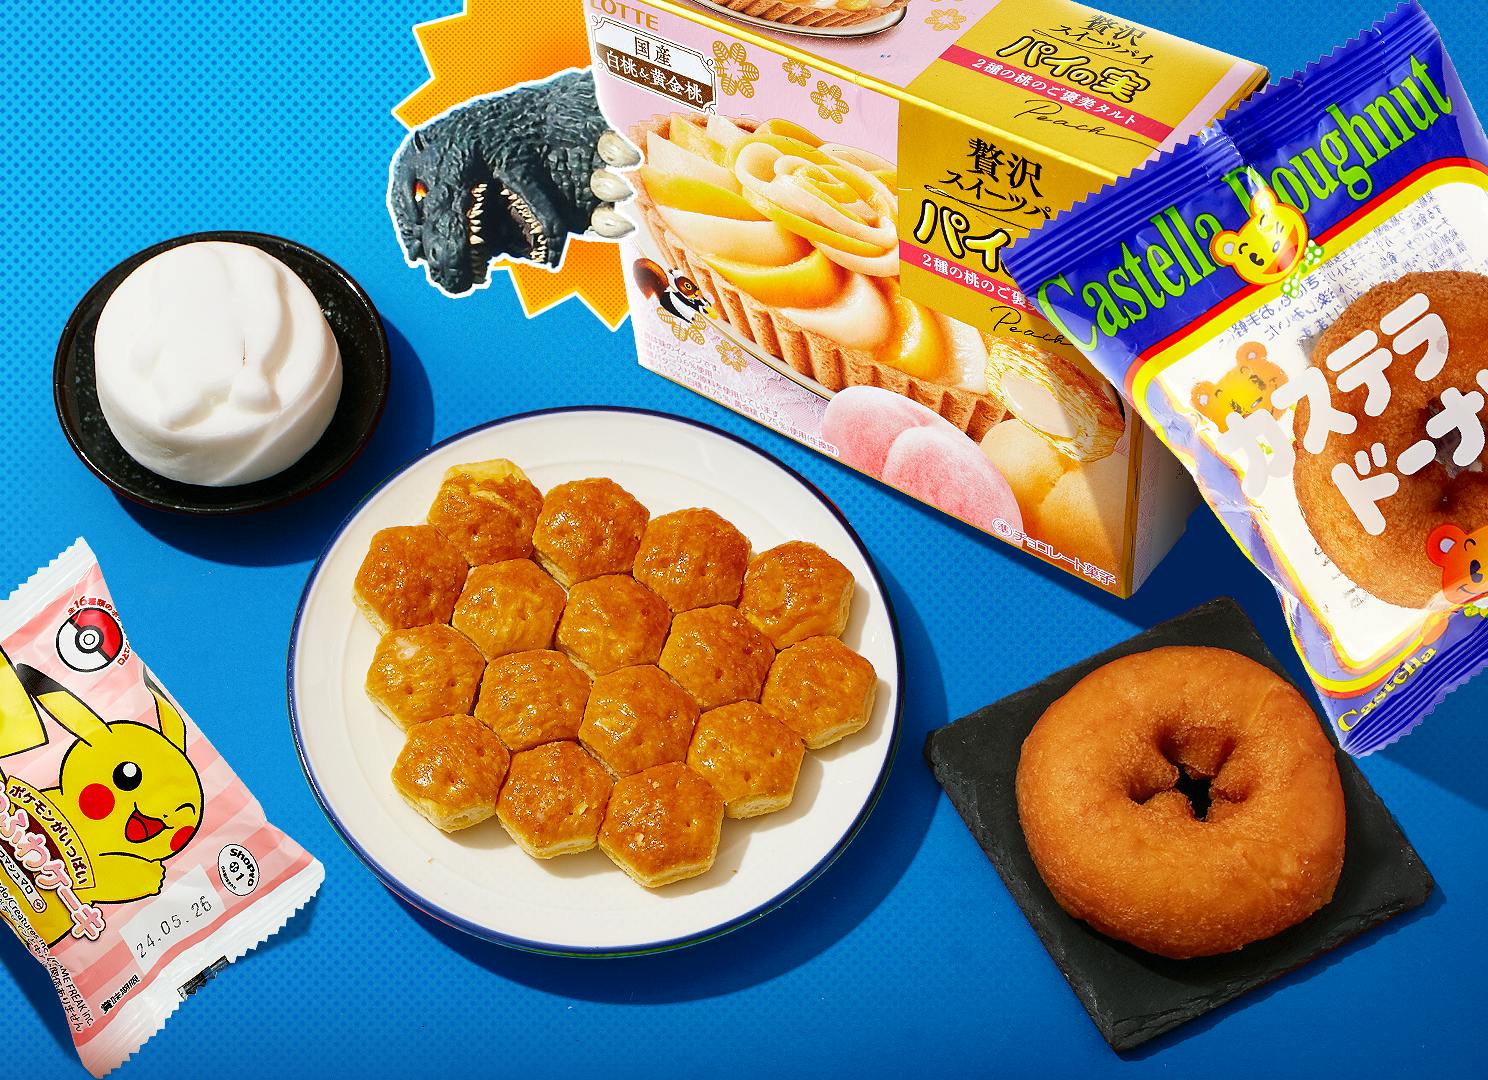 Pokemon Chocolate Marshmallow, Pai no Mi Mini Pies, and Castella Donut sit on a blue background surrounded by Tokyo motifs like Godzilla.